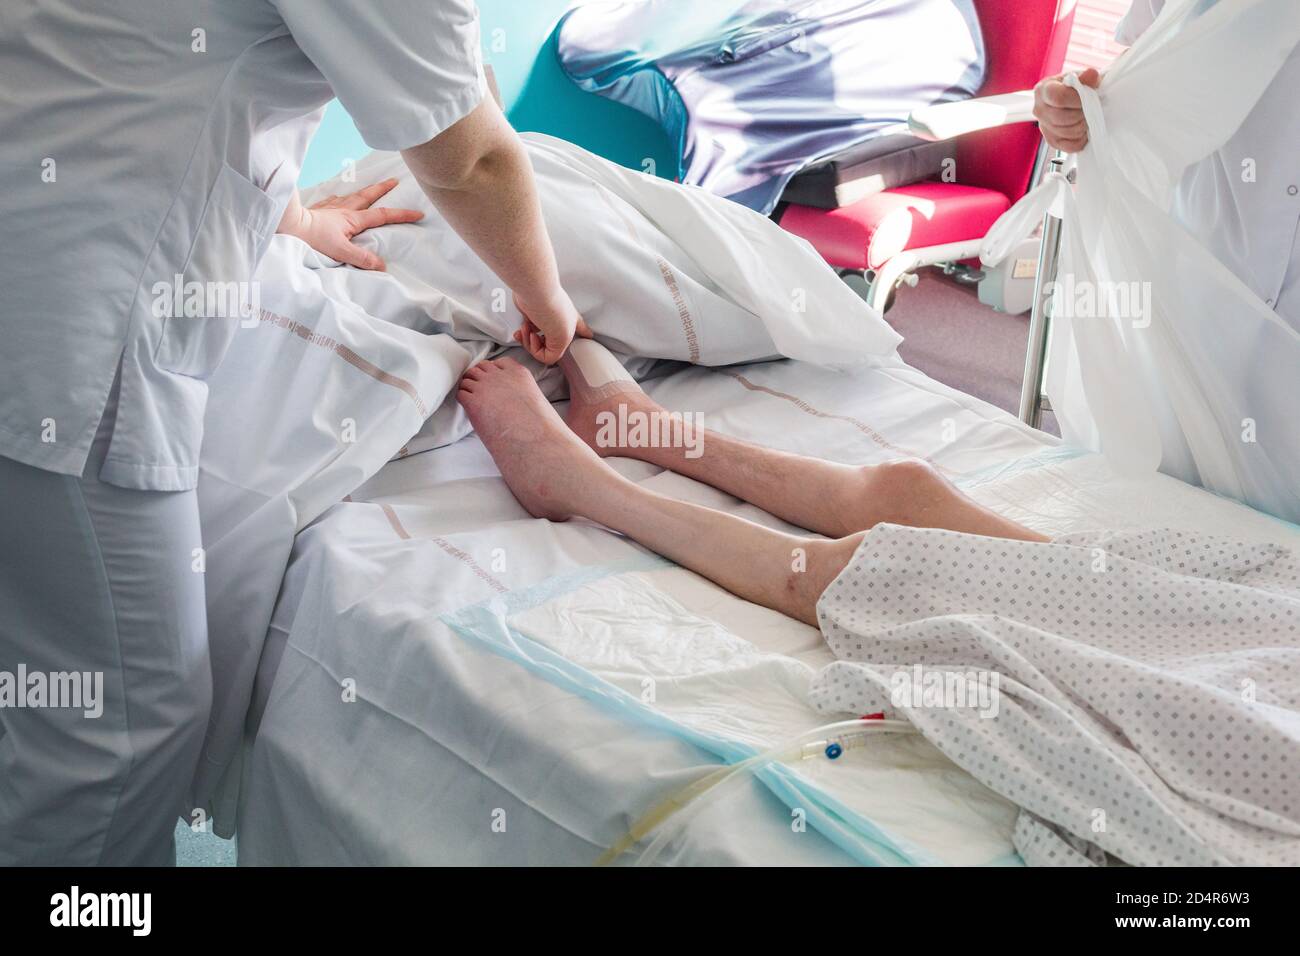 Paziente quadriplegico ricoverato in una sala PMR (persona con mobilità ridotta), supportato da un infermiere e da un operatore sanitario. Cura, prevenzione e monitoraggio Foto Stock